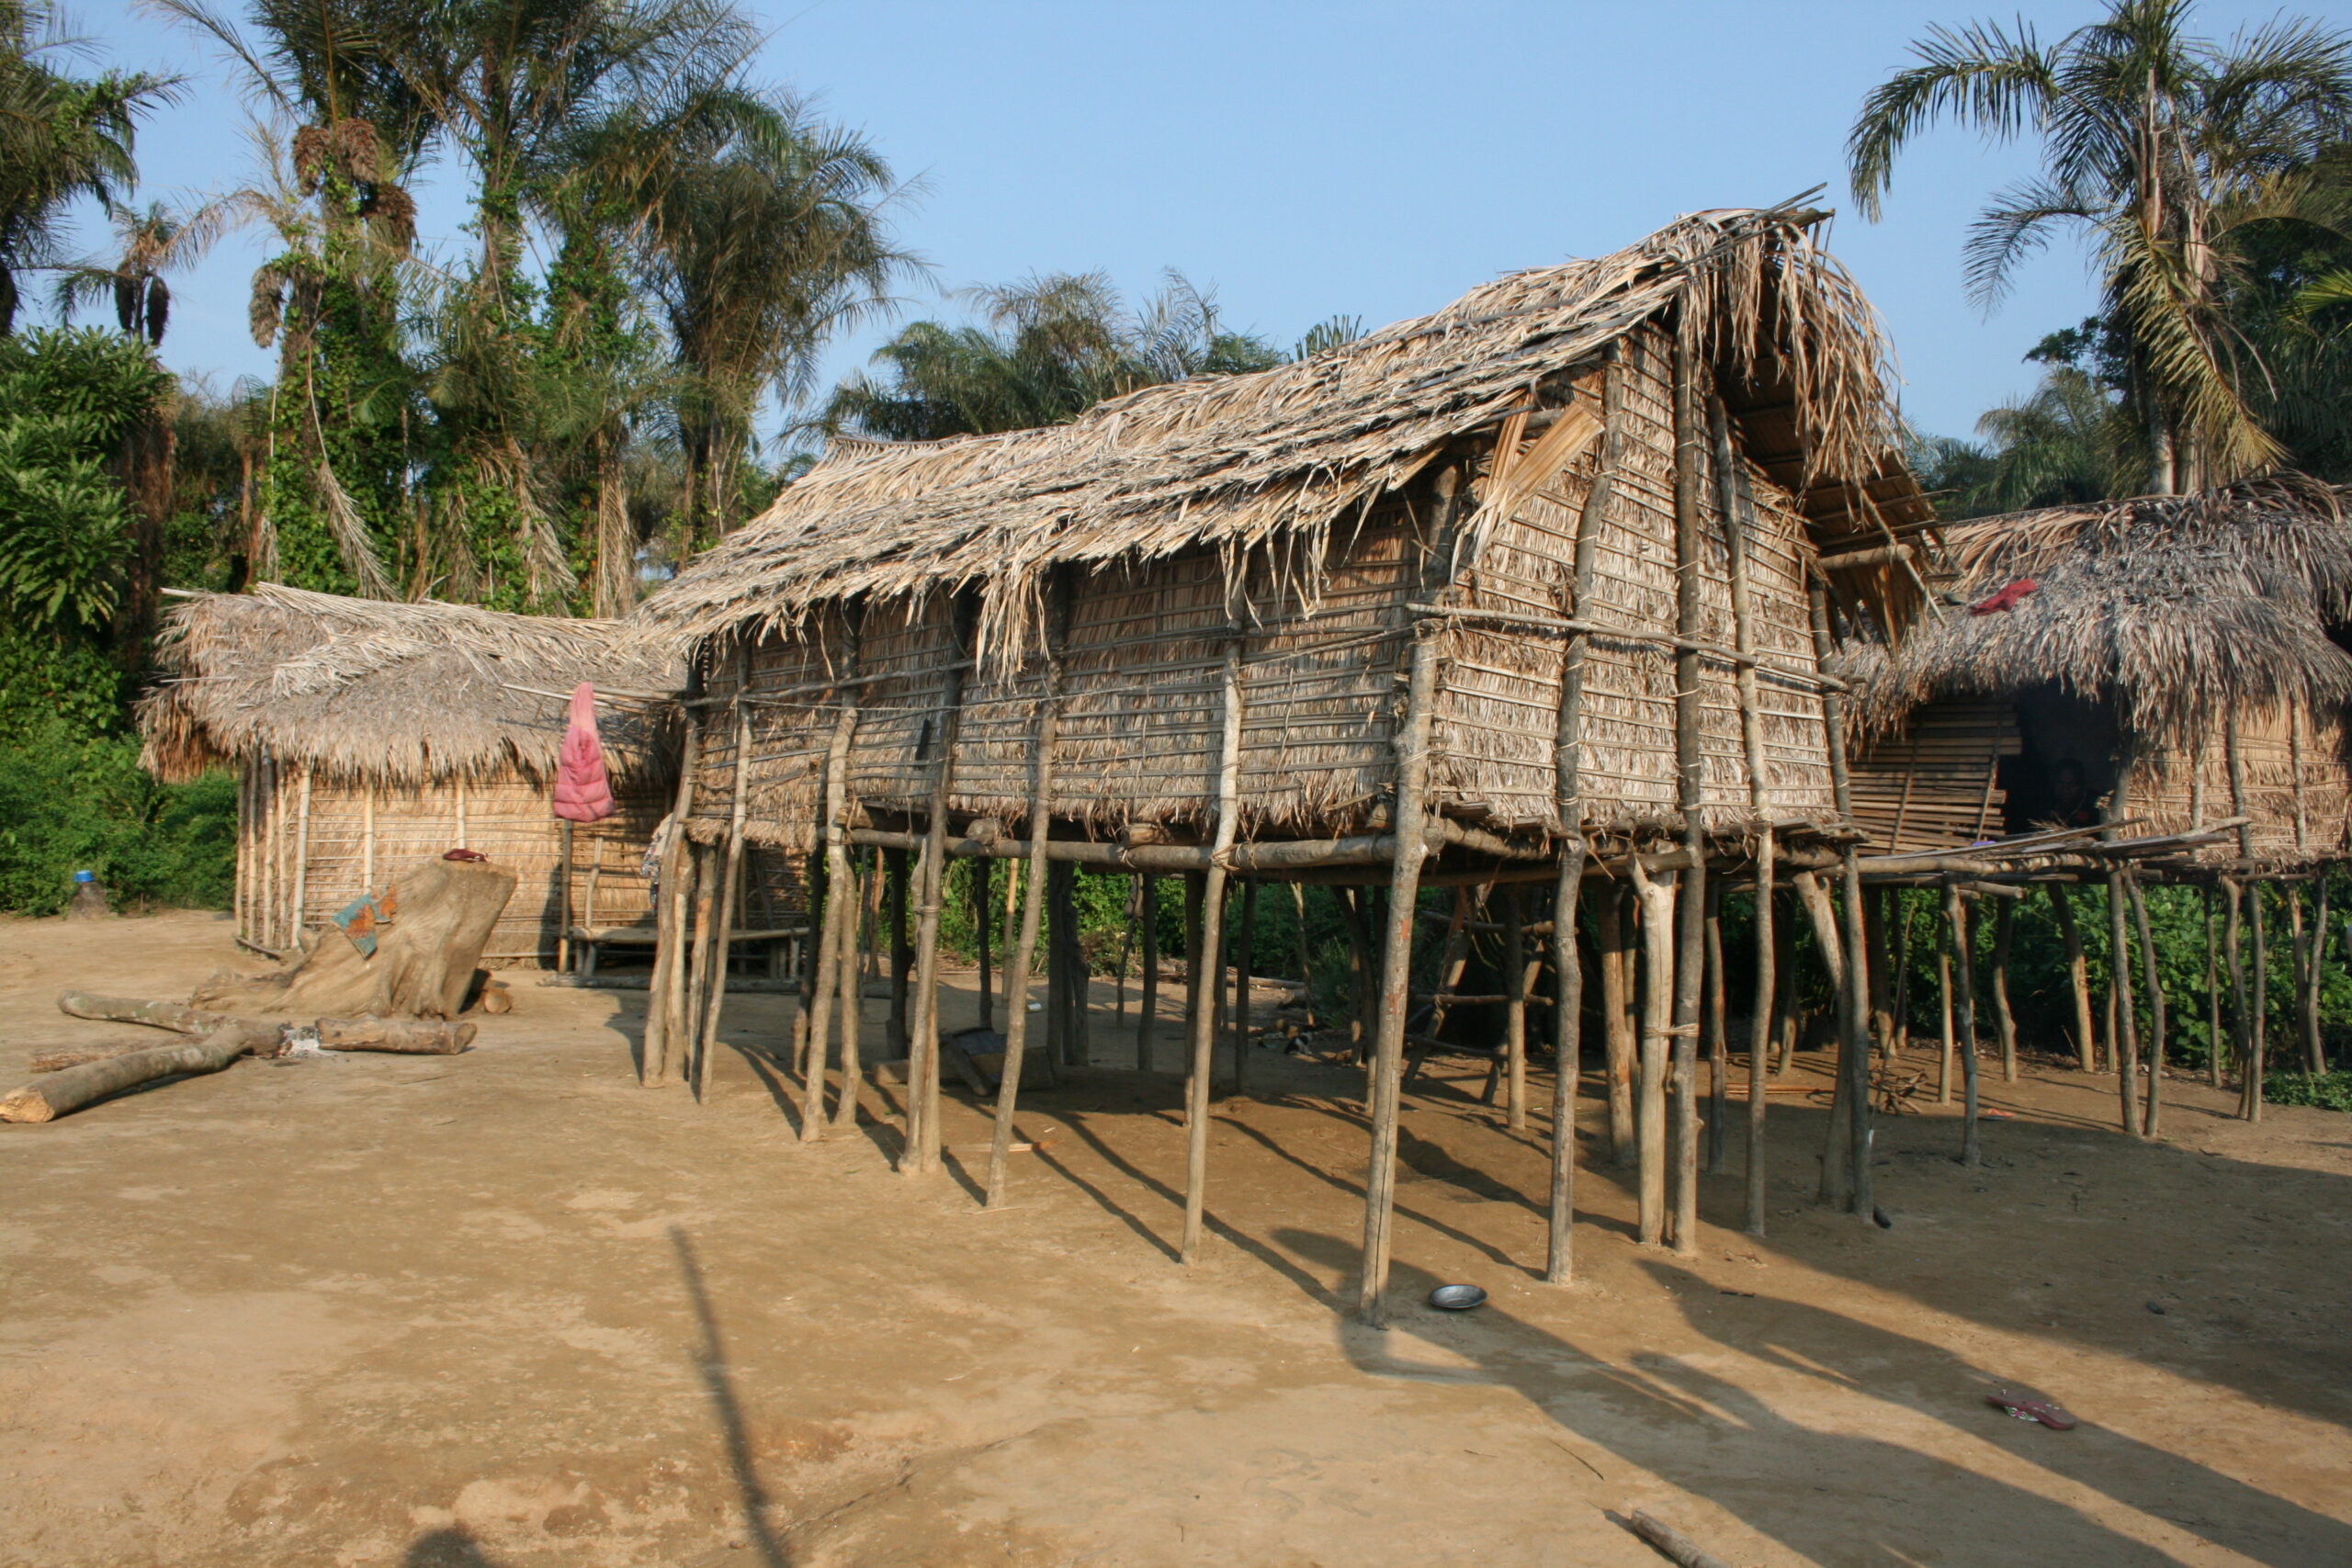 Hut in Mobese village